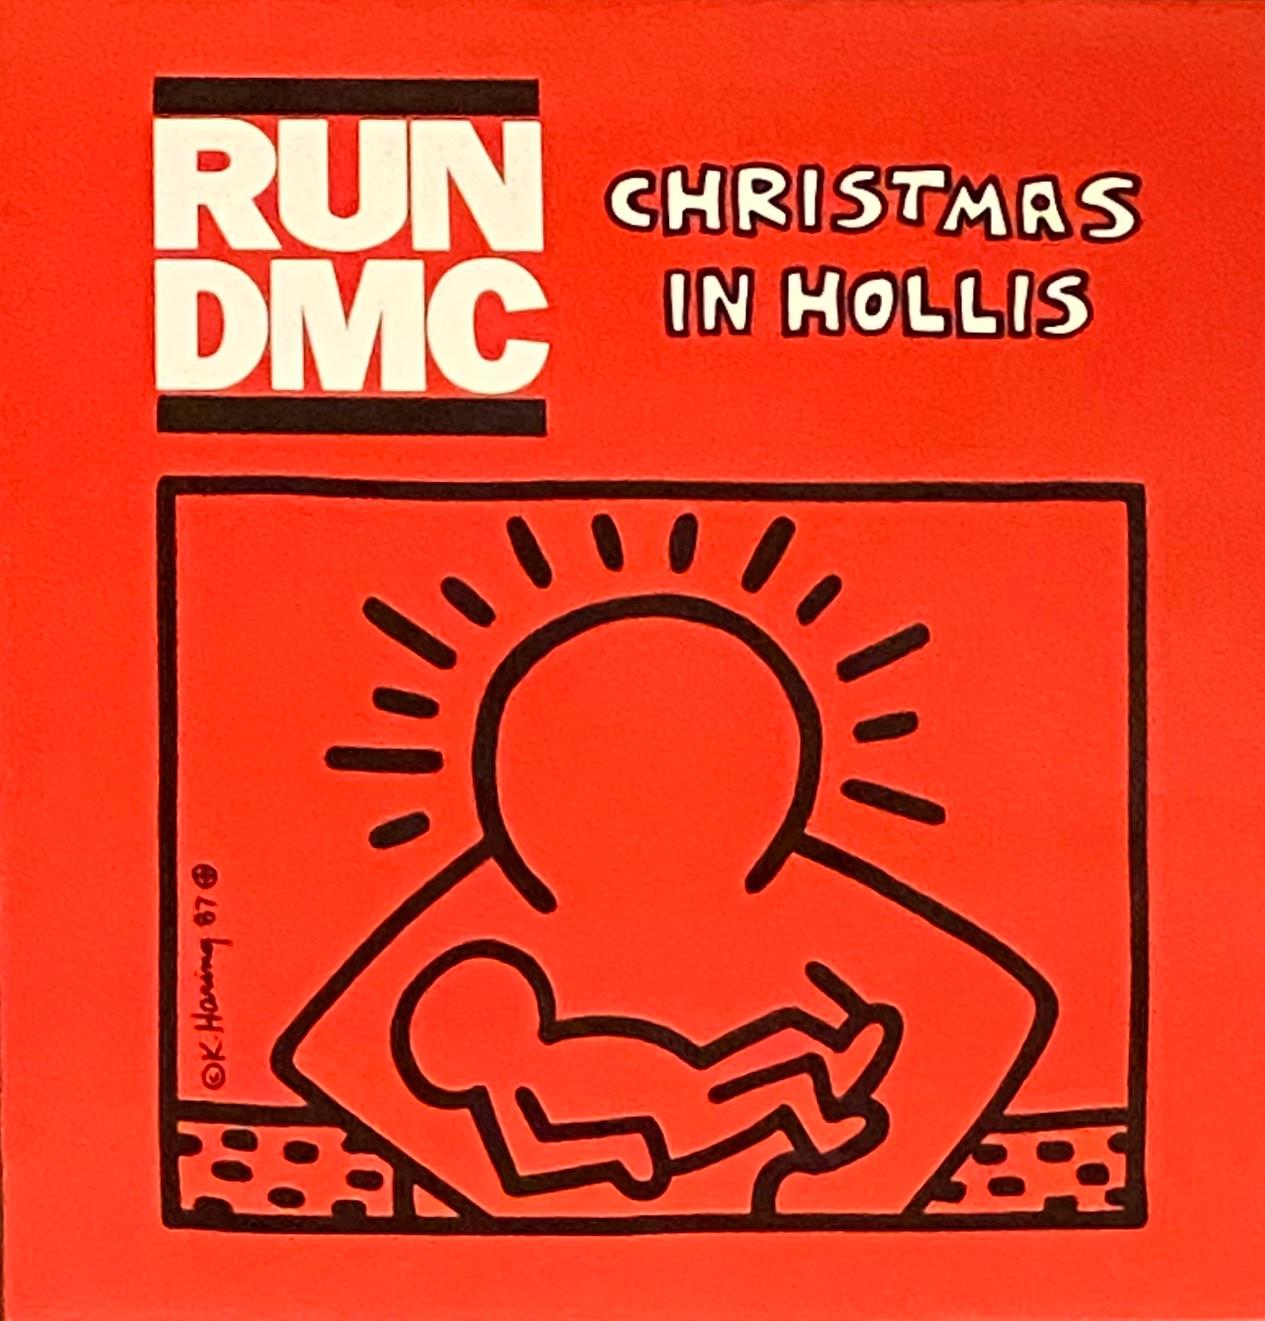 Keith Haring, Run DMC Noël :
Run DMC "Christmas In Hollis" : Une pochette de vinyle rare et recherchée présentant une œuvre originale de Keith Haring. Des couleurs vraiment vibrantes qui en font une œuvre d'art murale remarquable et une pièce de